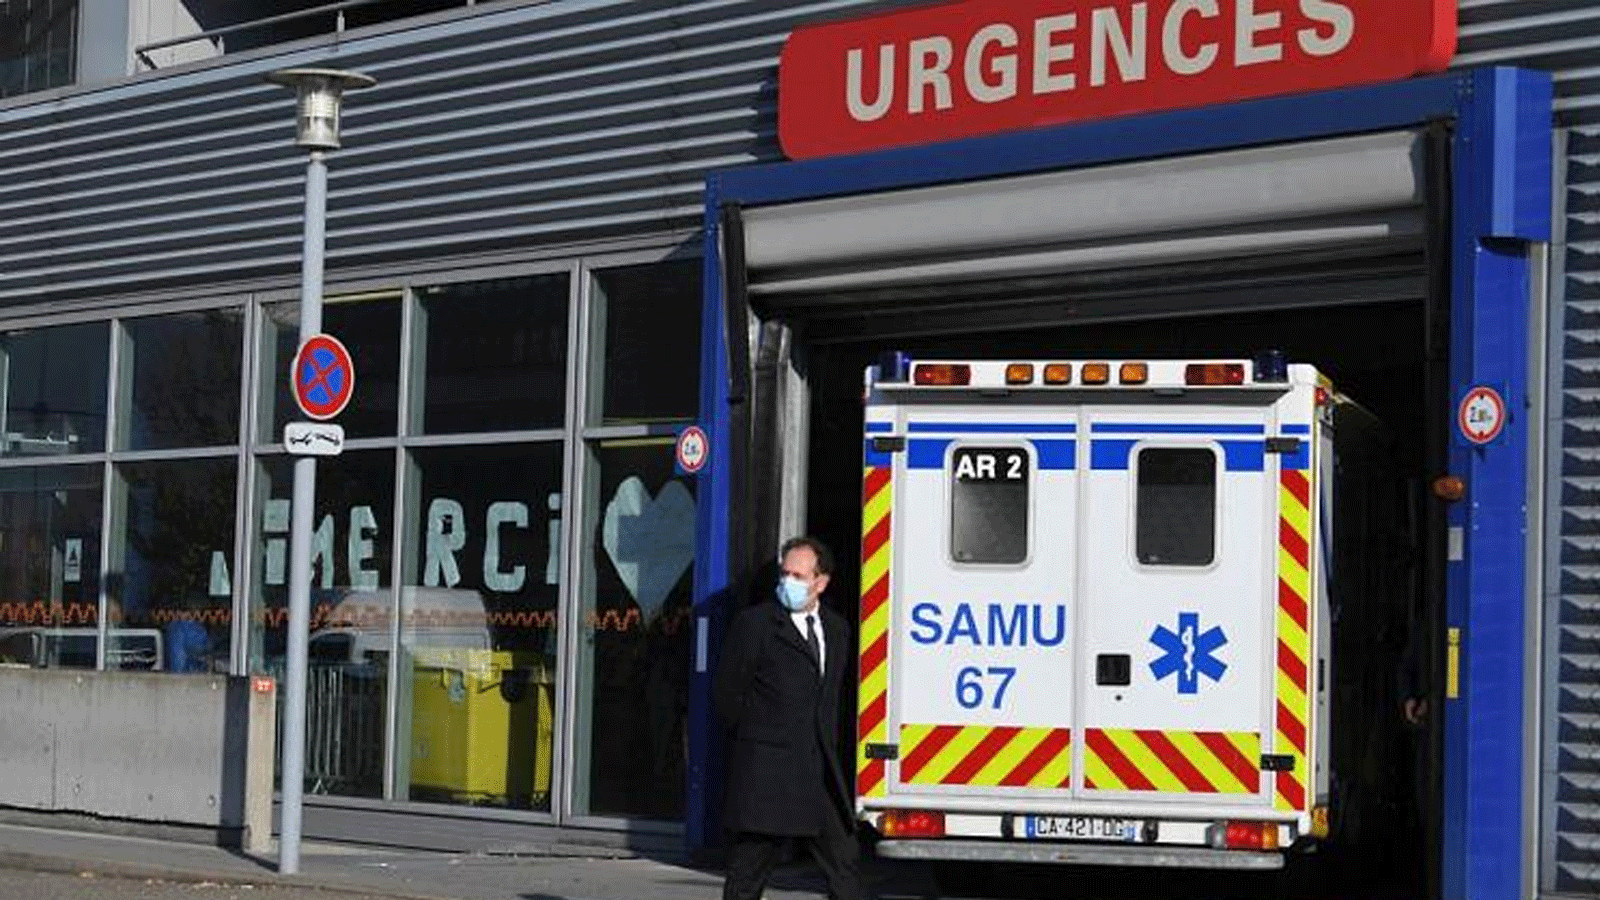 وصول سيارة إسعاف إلى وحدة الطوارئ في مستشفى ستراسبورغ، في 6 تشرين الثاني\ نوفمبر 2020، وسط أزمة صحية مرتبطة بوباء كوفيد -19 الناجم عن فيروس كورونا